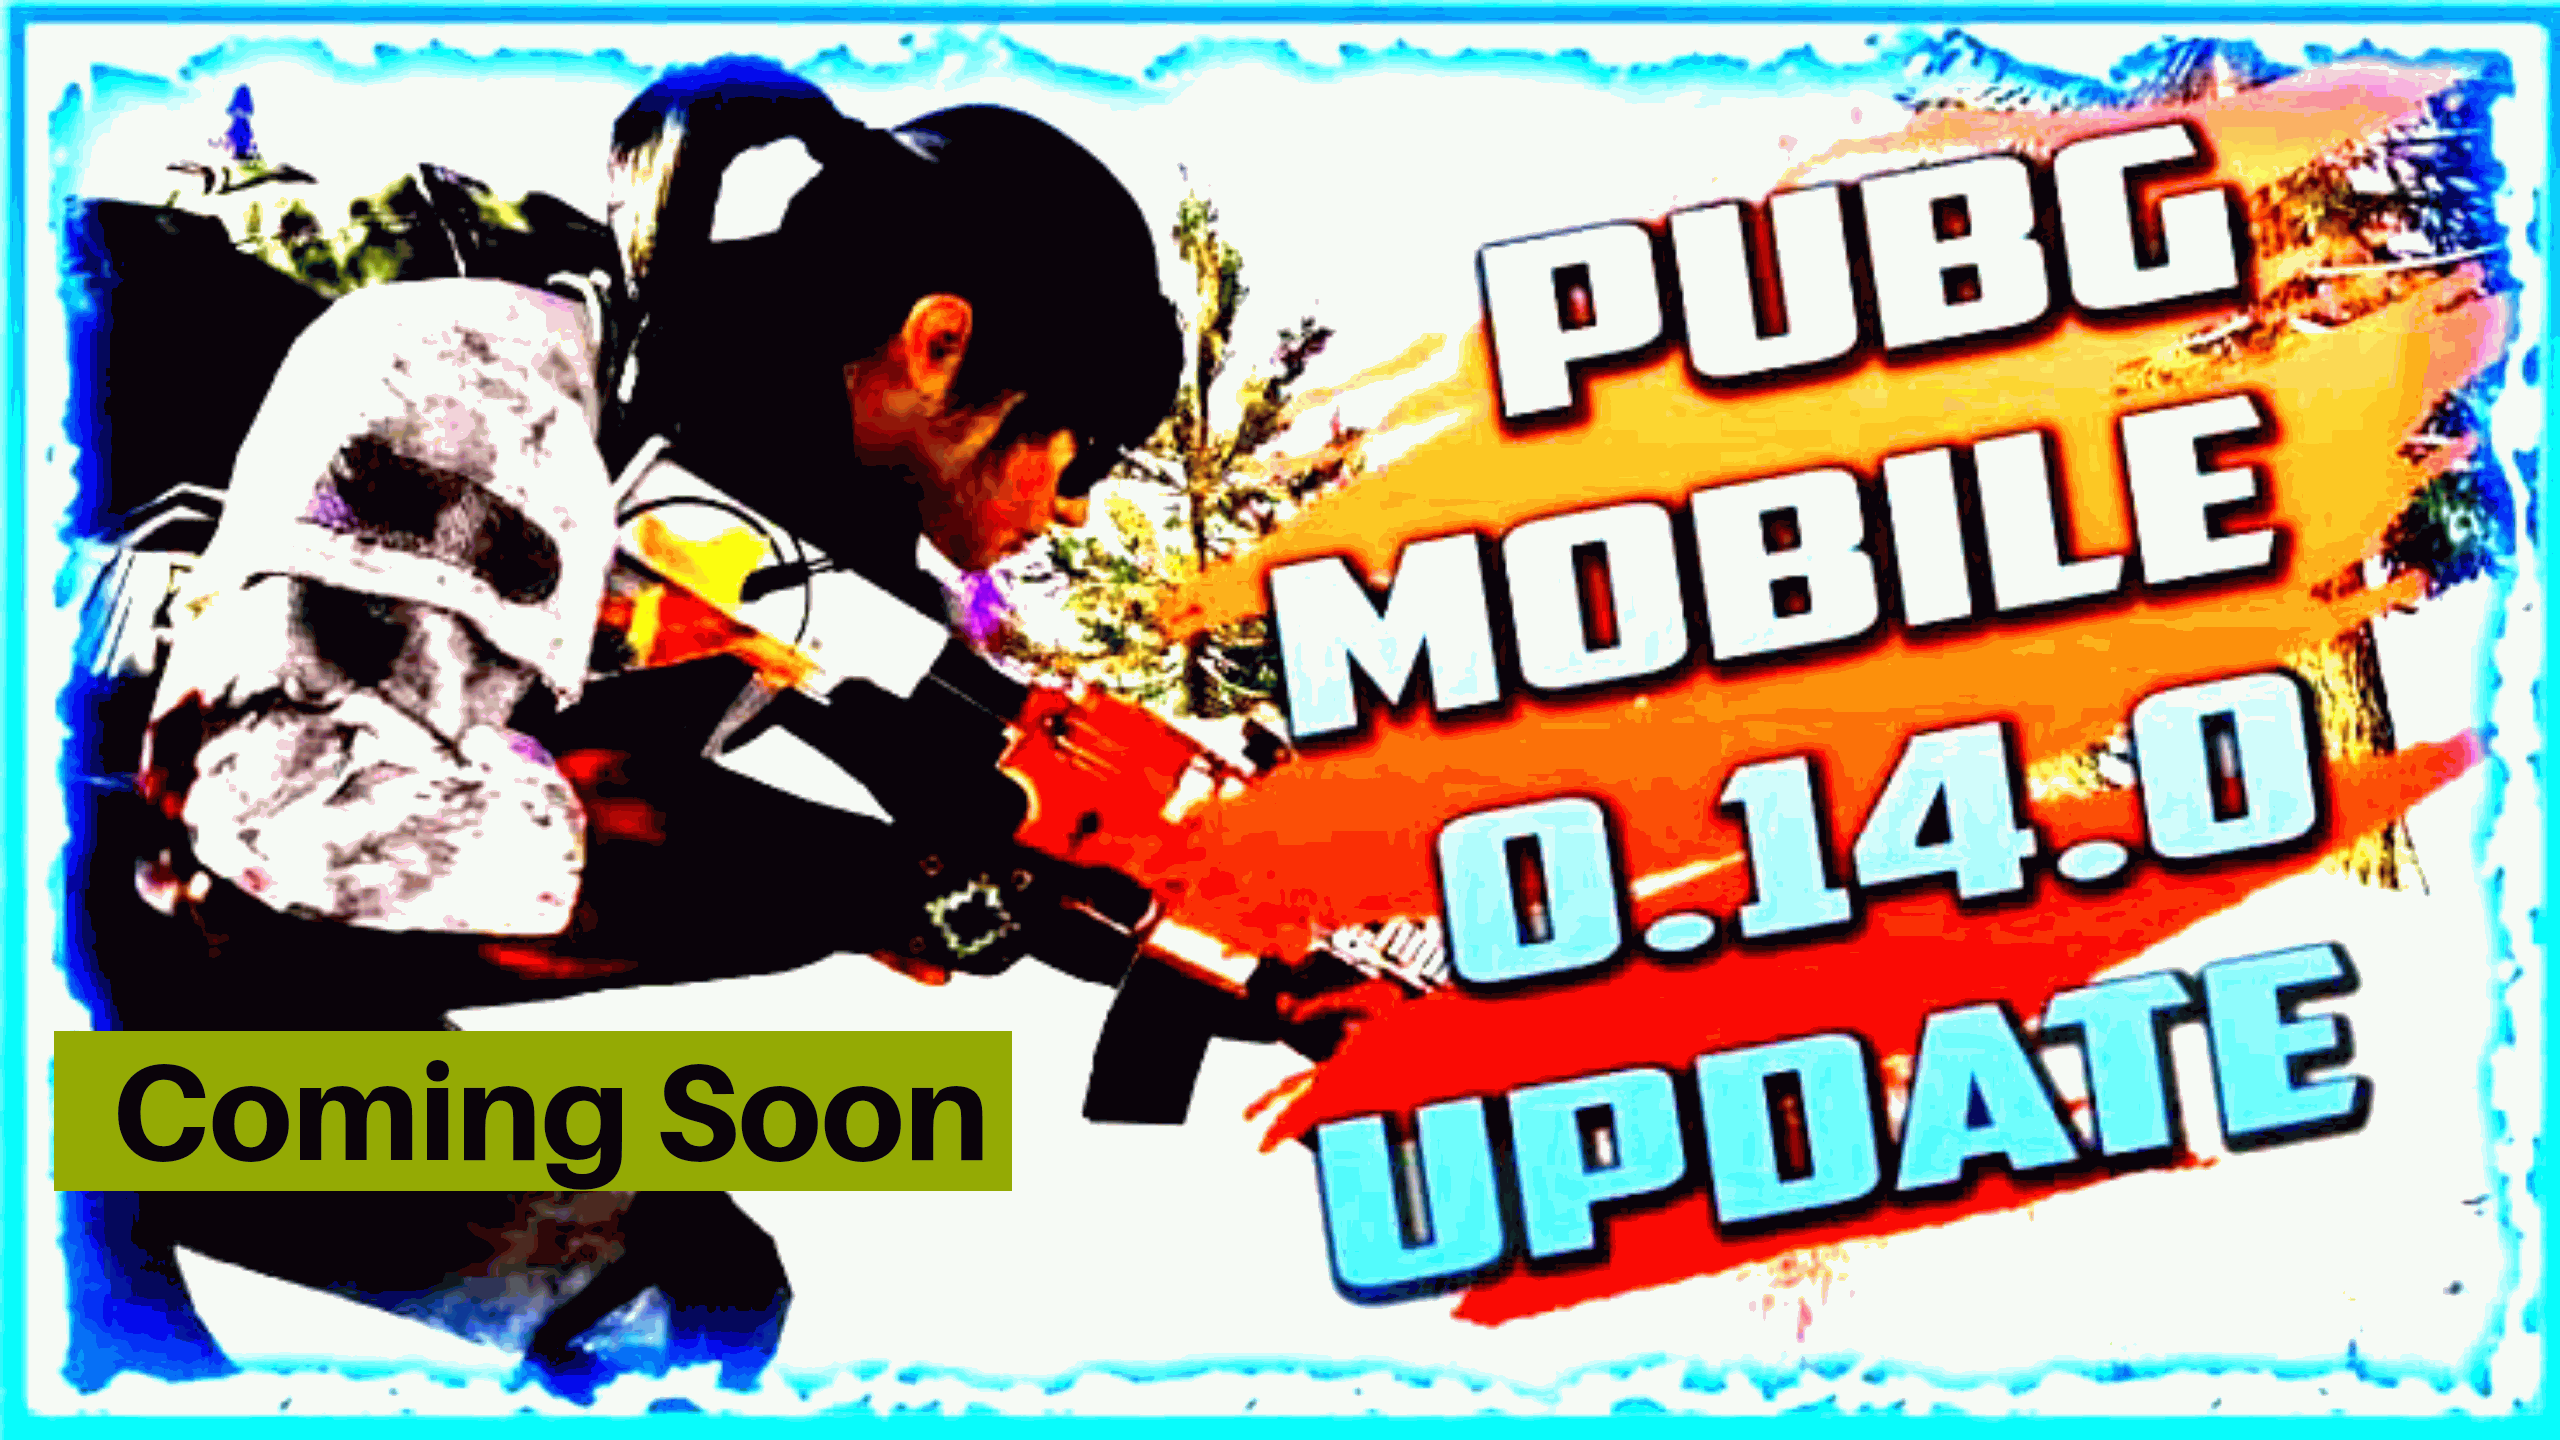 PUBG Mobile 0.14.0 update